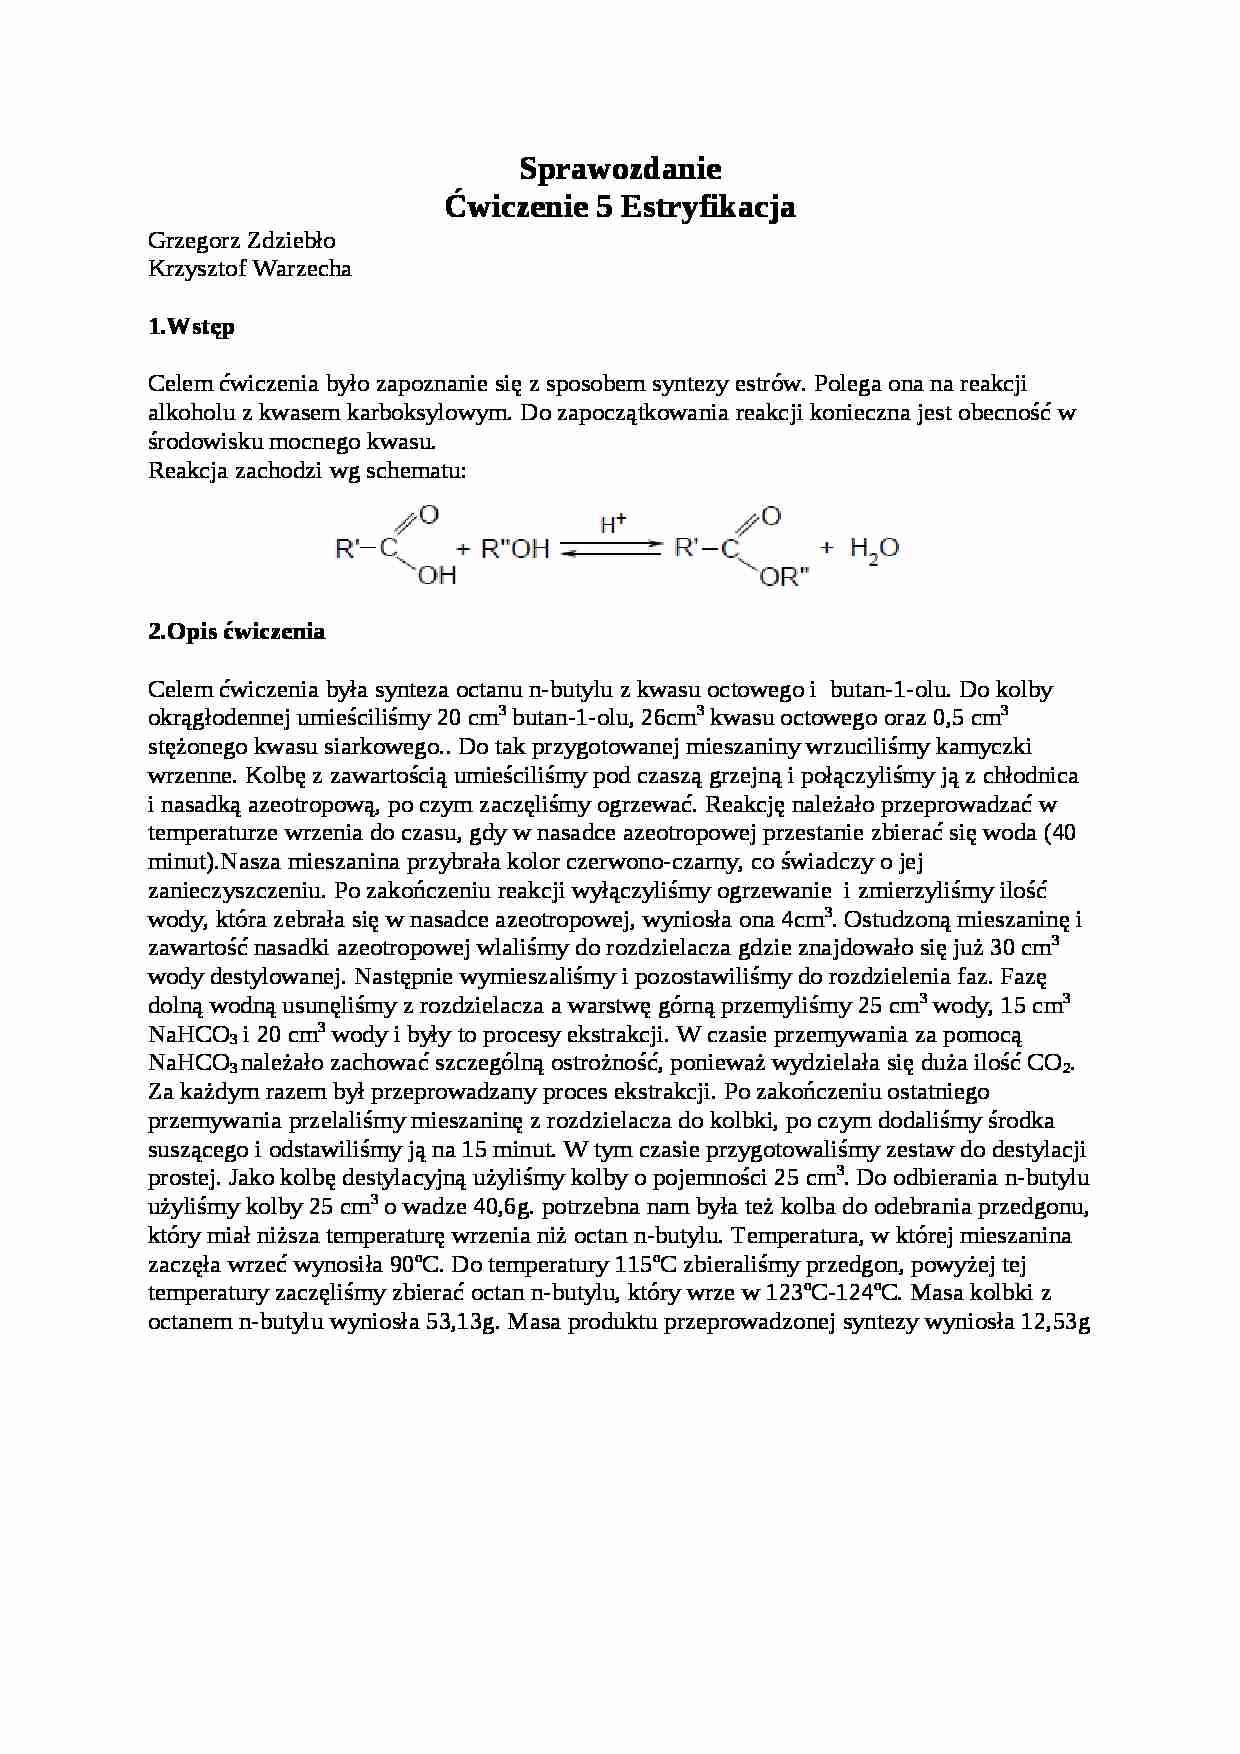 Chemia organiczna - estryfikacja - omówienie - sposób syntezy - strona 1